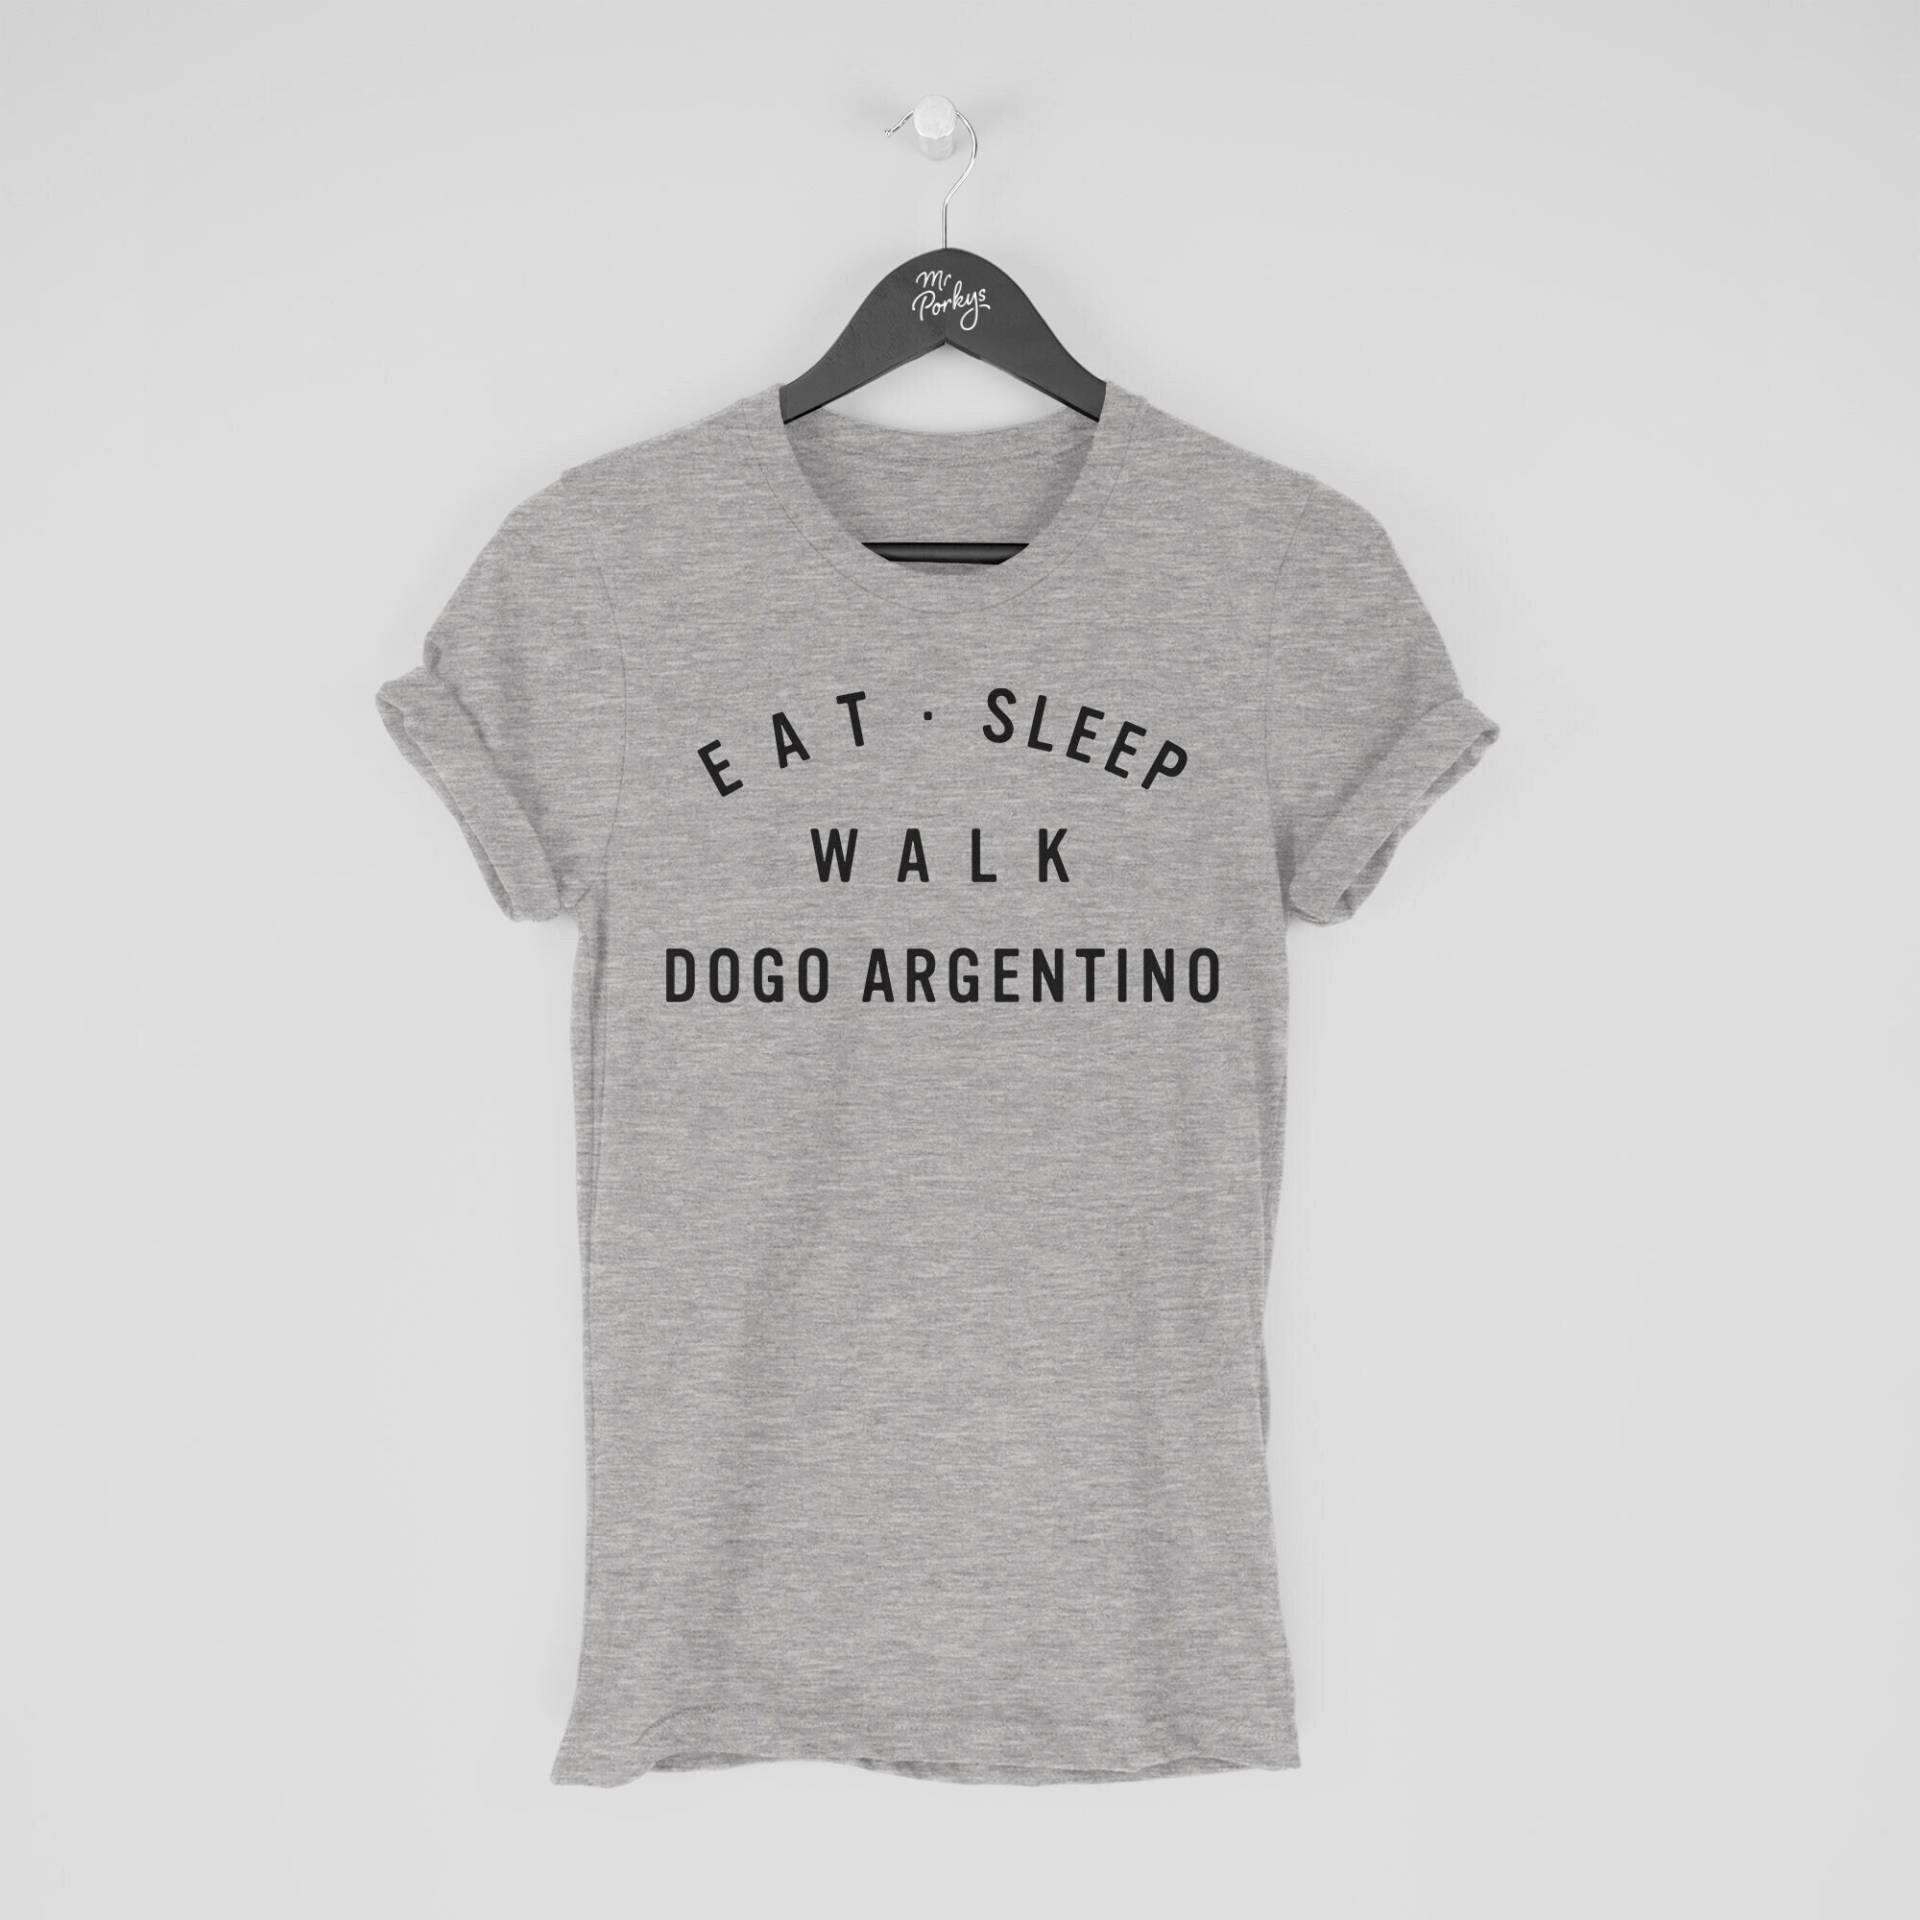 Dogo Argentino Shirt, Eat Sleep Walk Argento T-Shirt, Geschenk Für Besitzer von MrPorkysGiftShop